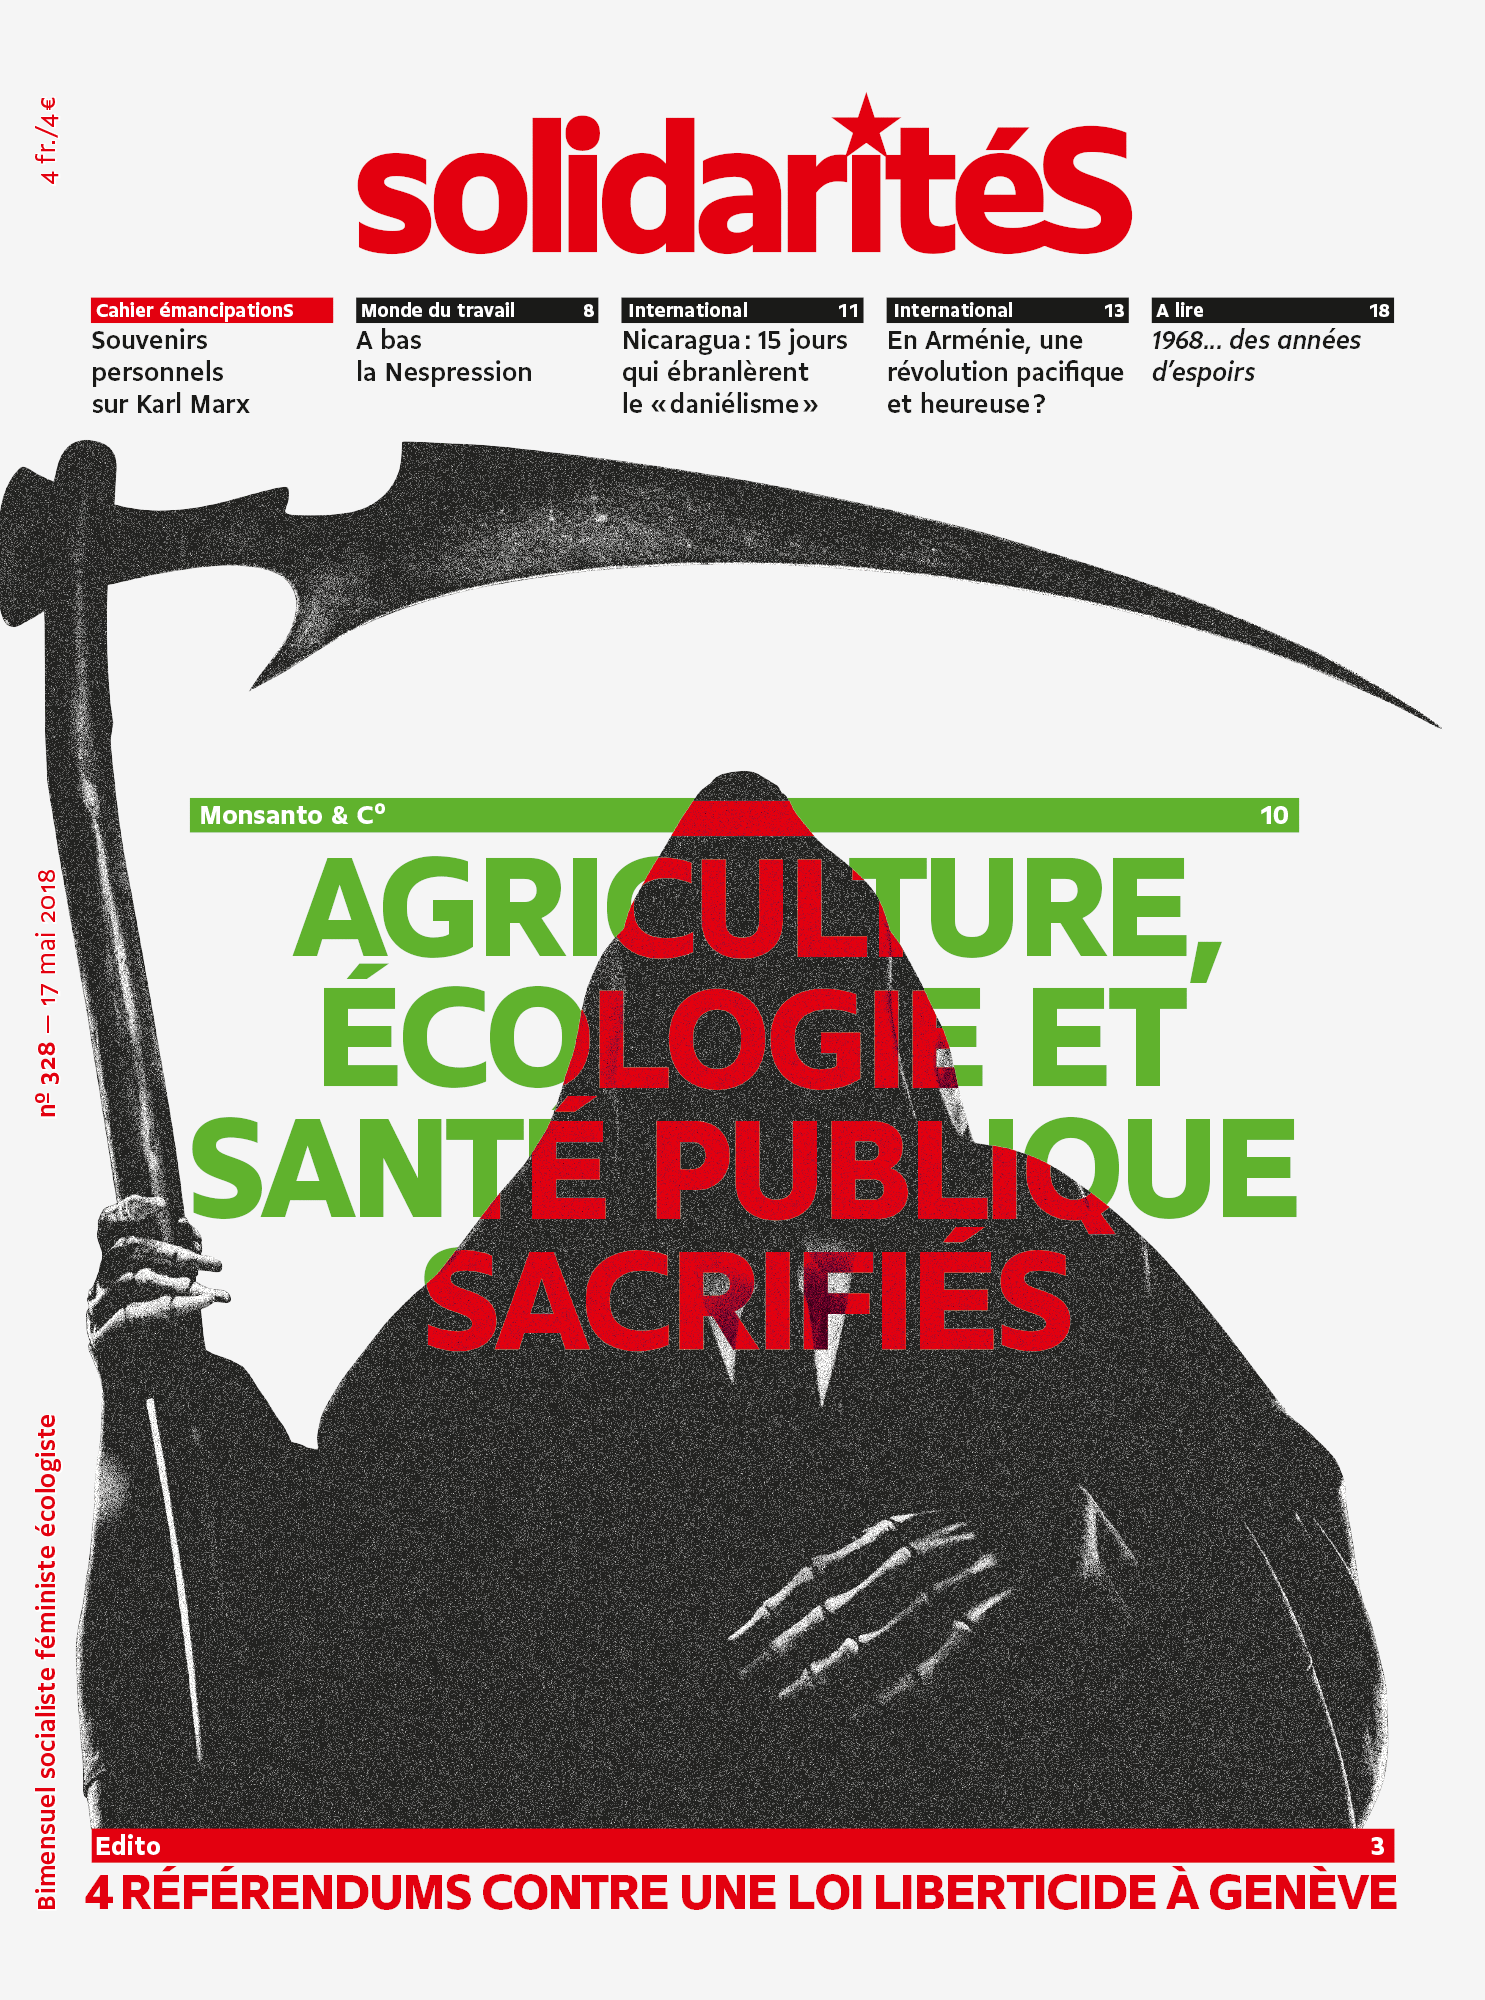 Couverture du numéro 328 du bimensuel solidaritéS: Monsanto et cie: griculture, écologie et santé publique sacrifiés